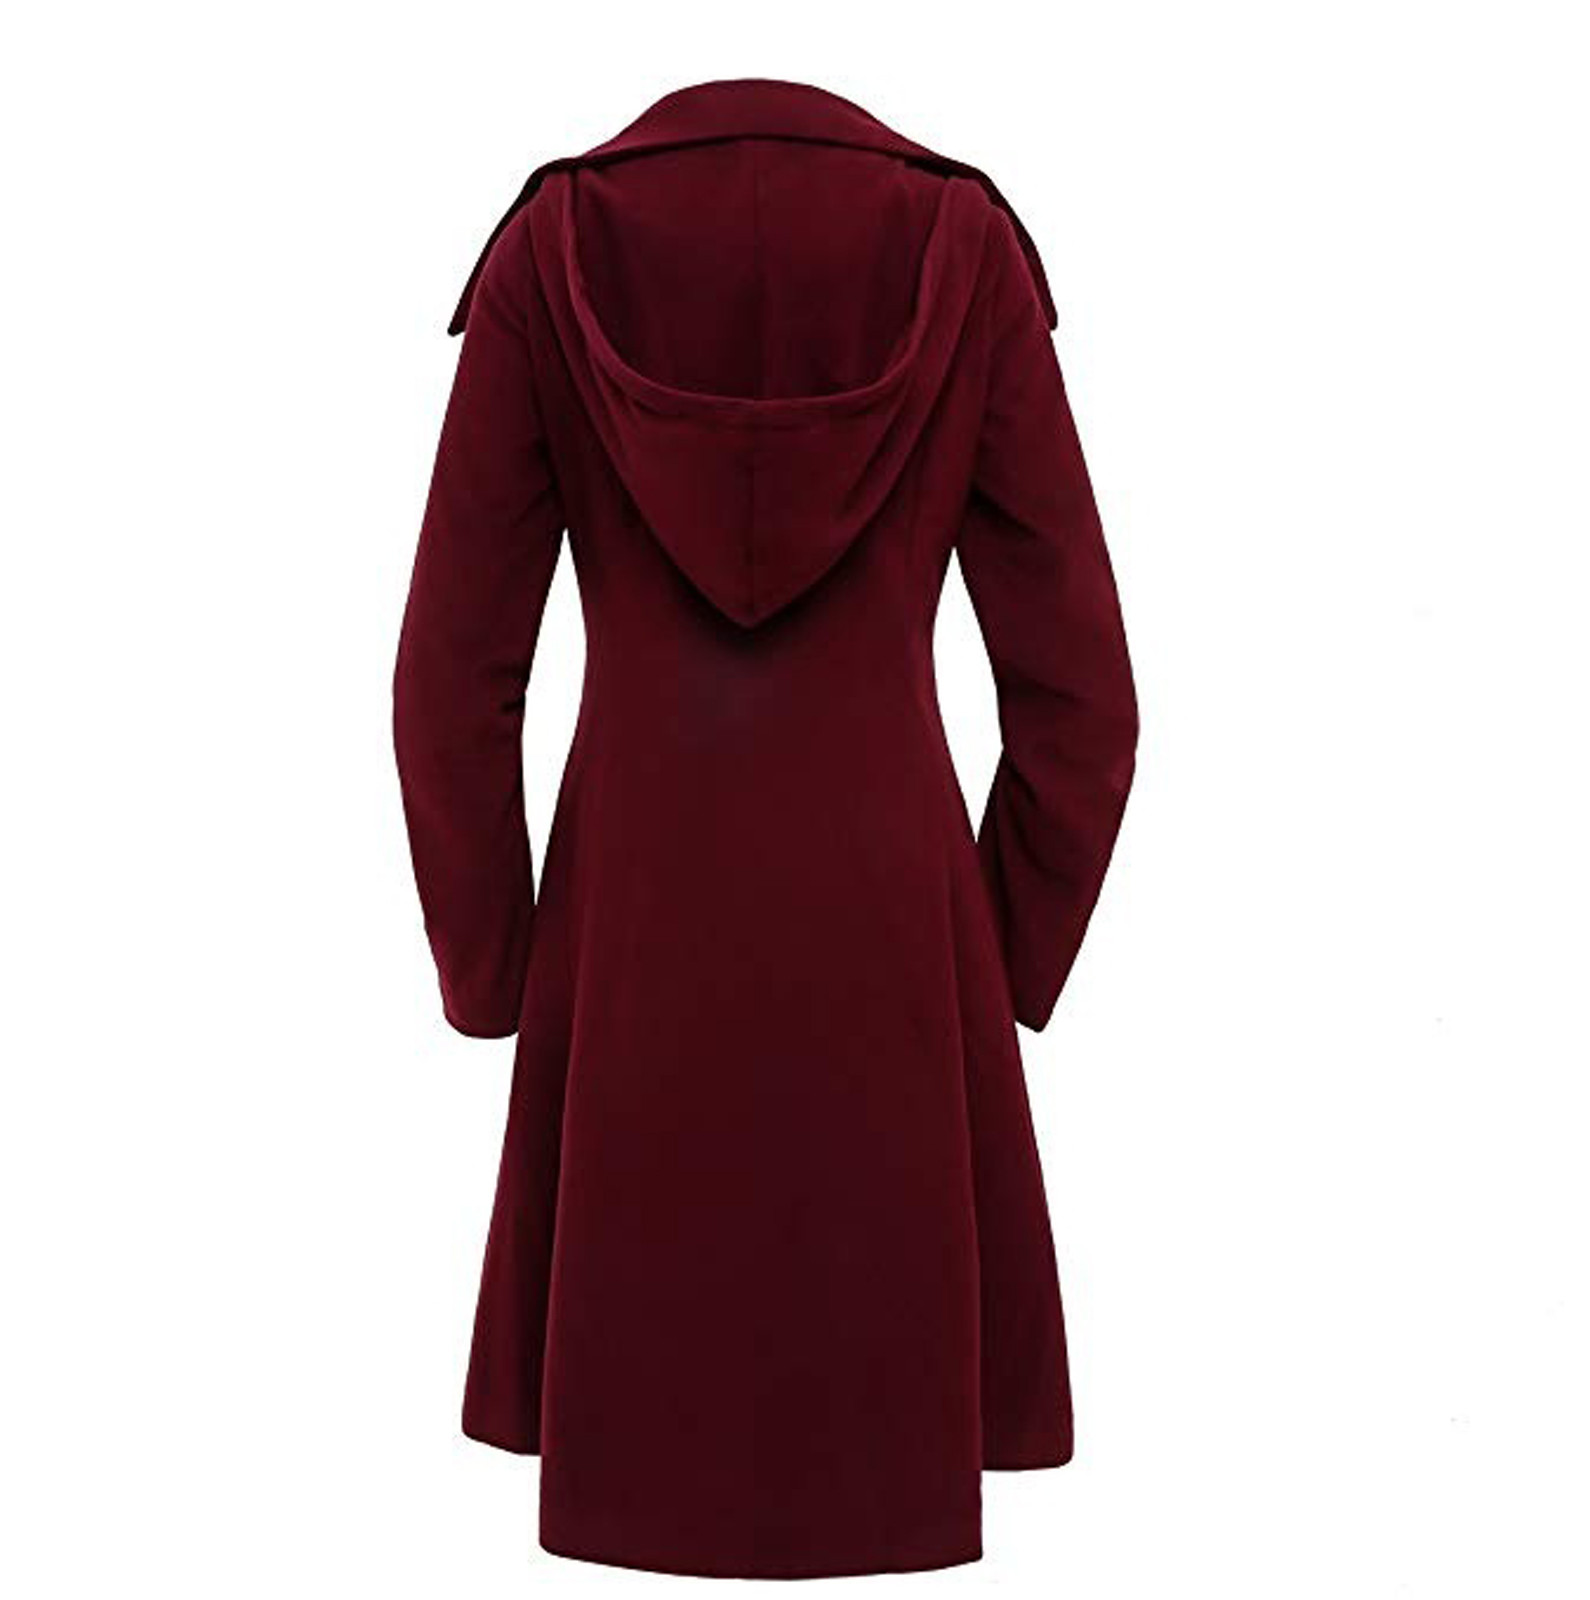 Bescita Women Faux Wool Warm Slim Coat Jacket Thick-Parka Overcoat Long Winter Outwear - image 3 of 5